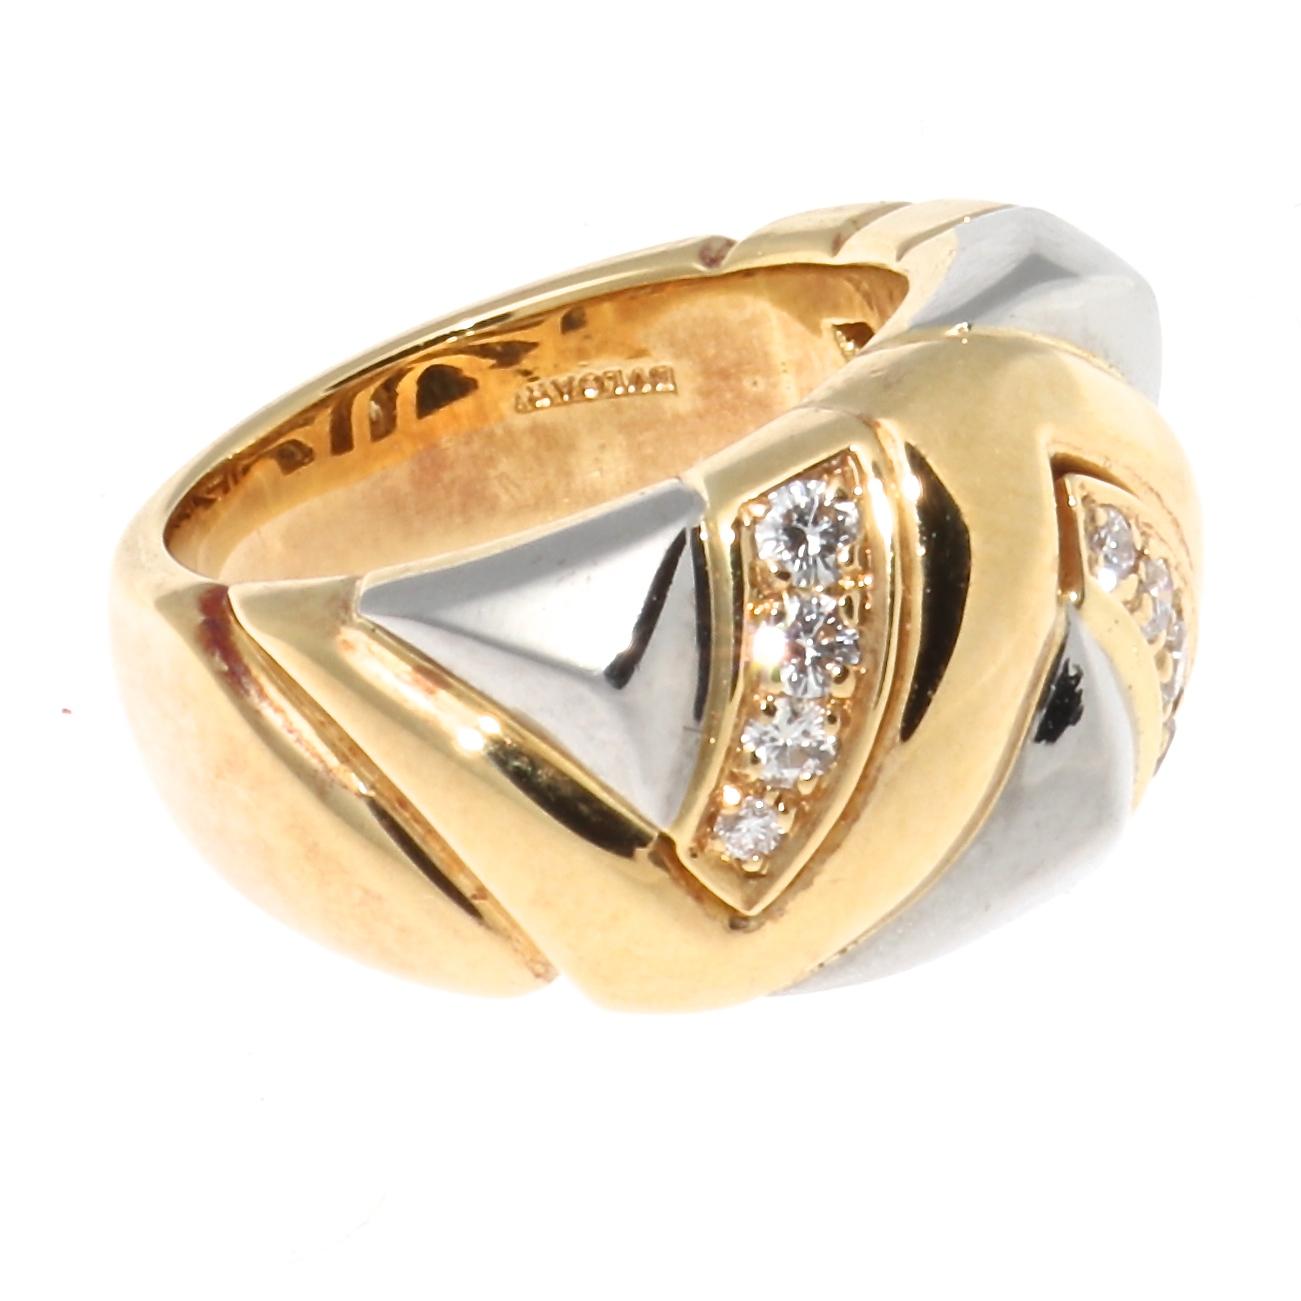 Bulgari Diamond Gold Ring 1